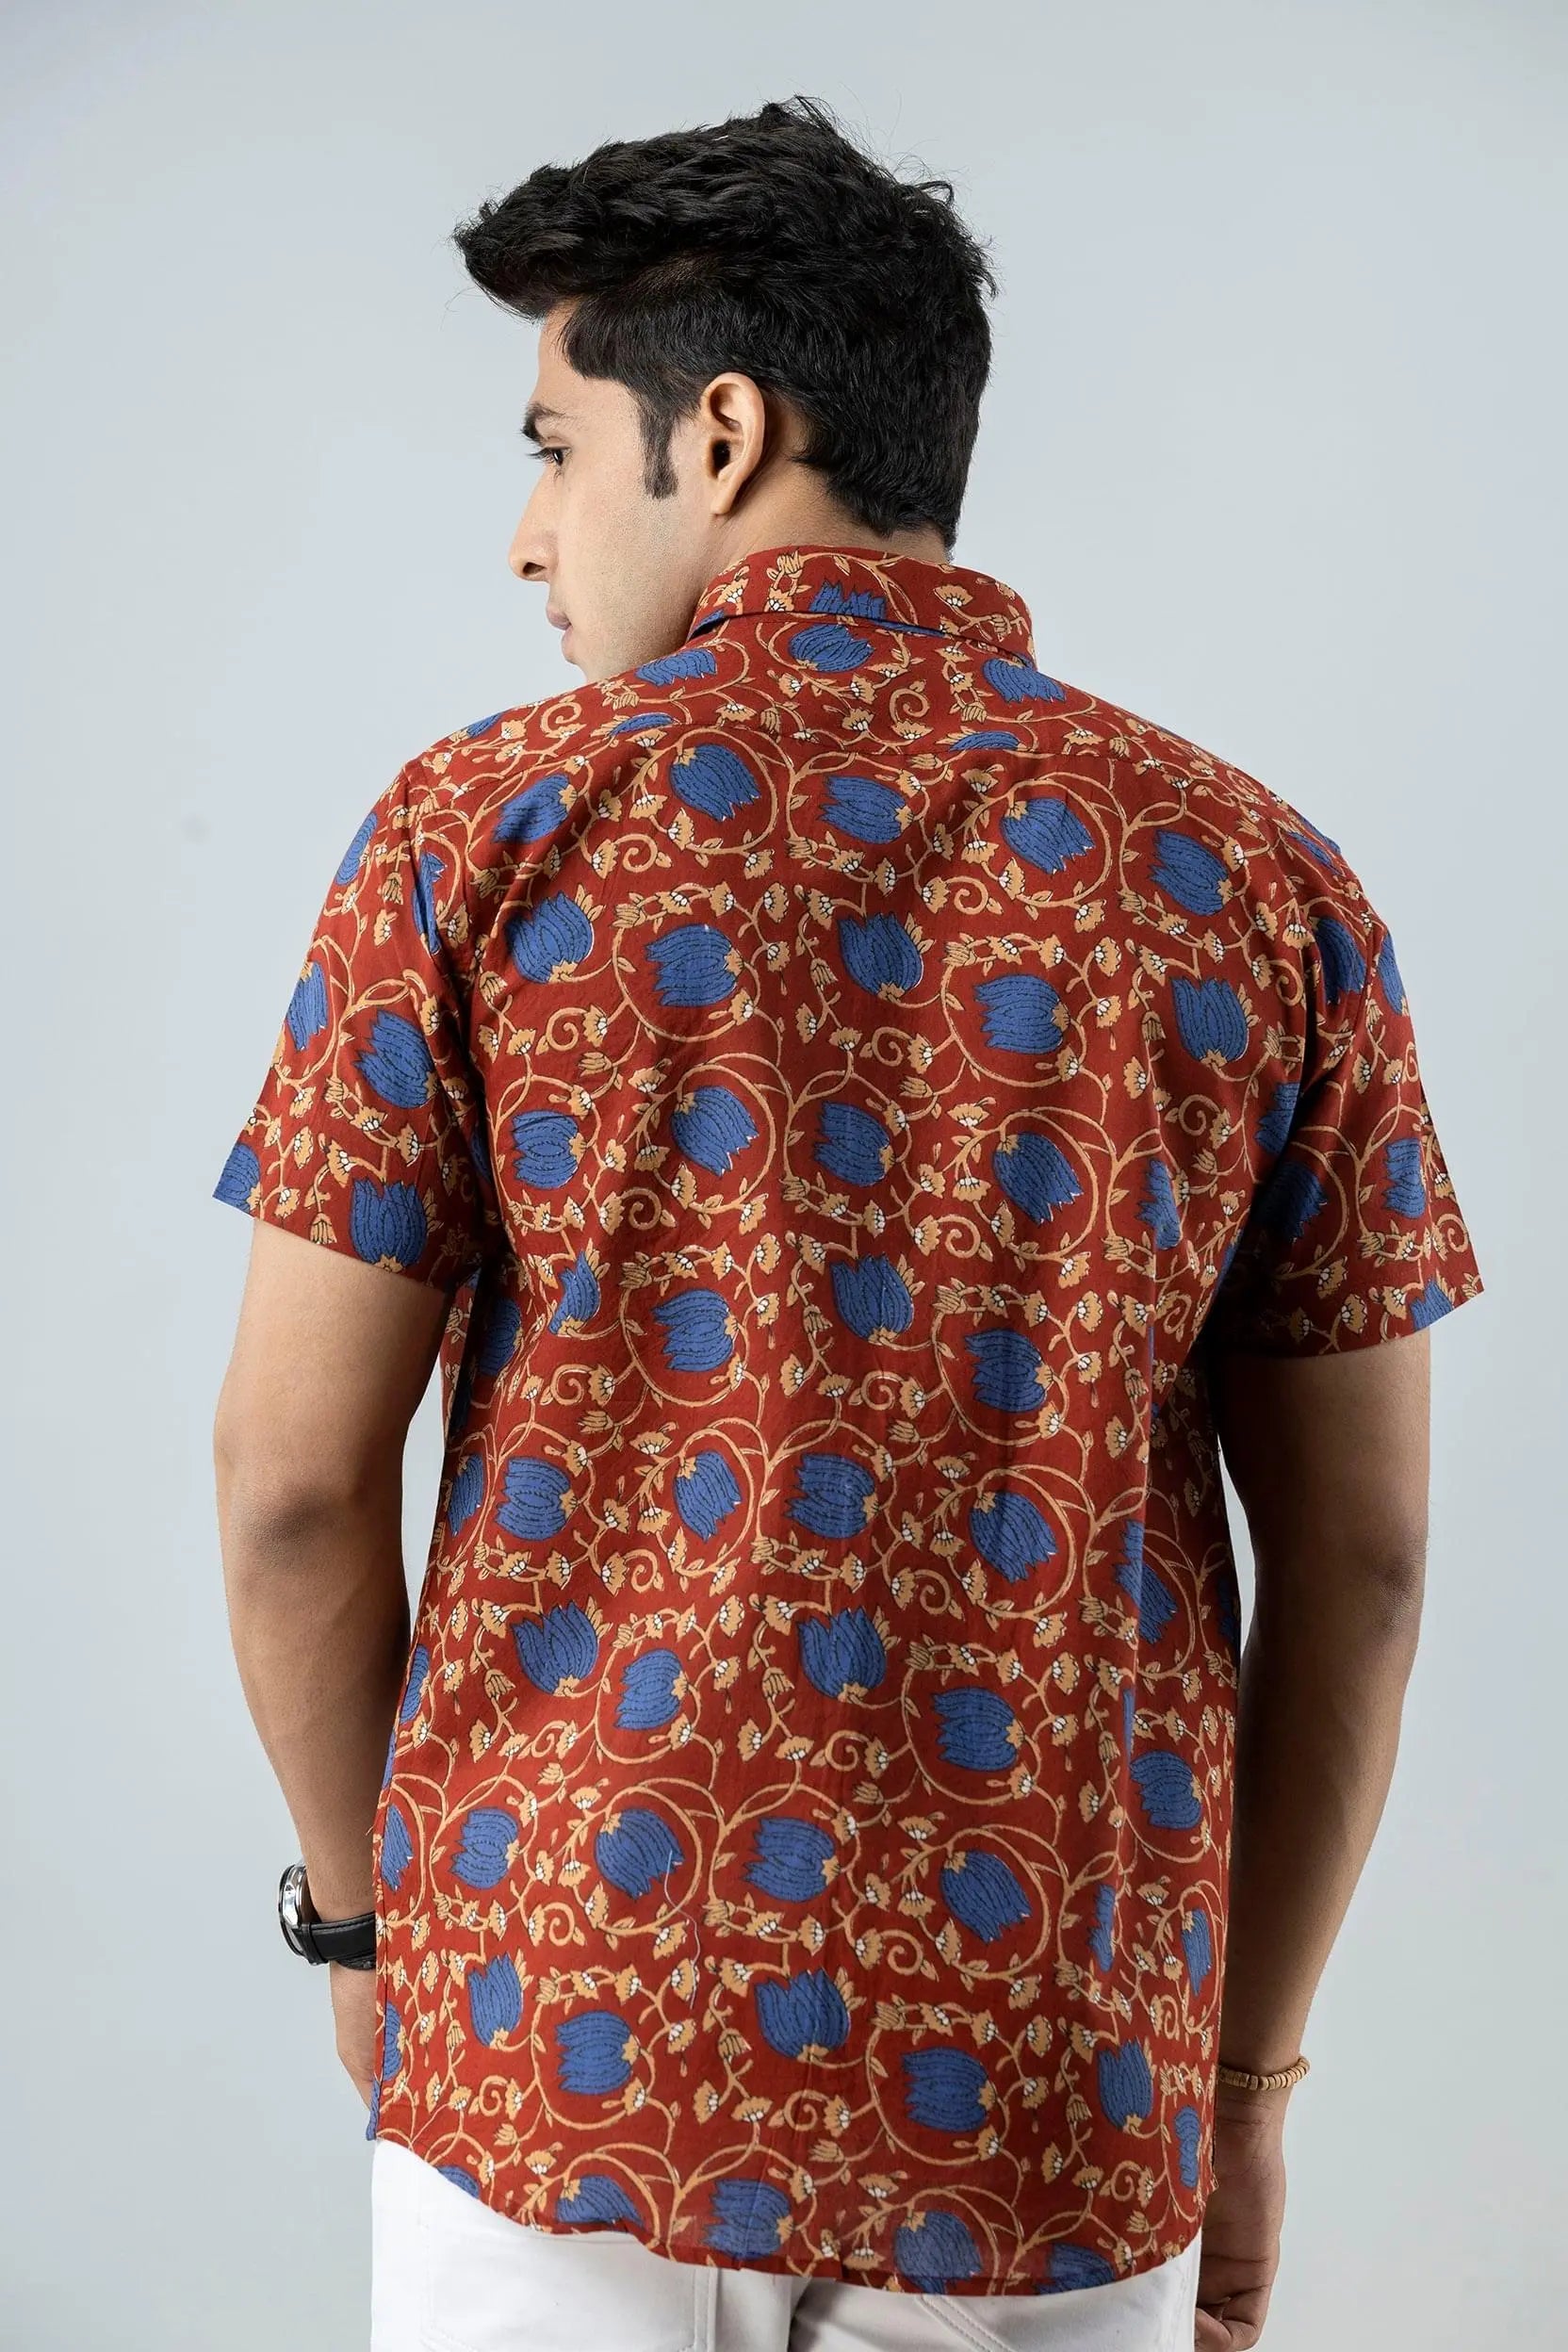 Firangi Yarn Block Printed Cotton Floral Jaipuri Maroon Shirt For Men